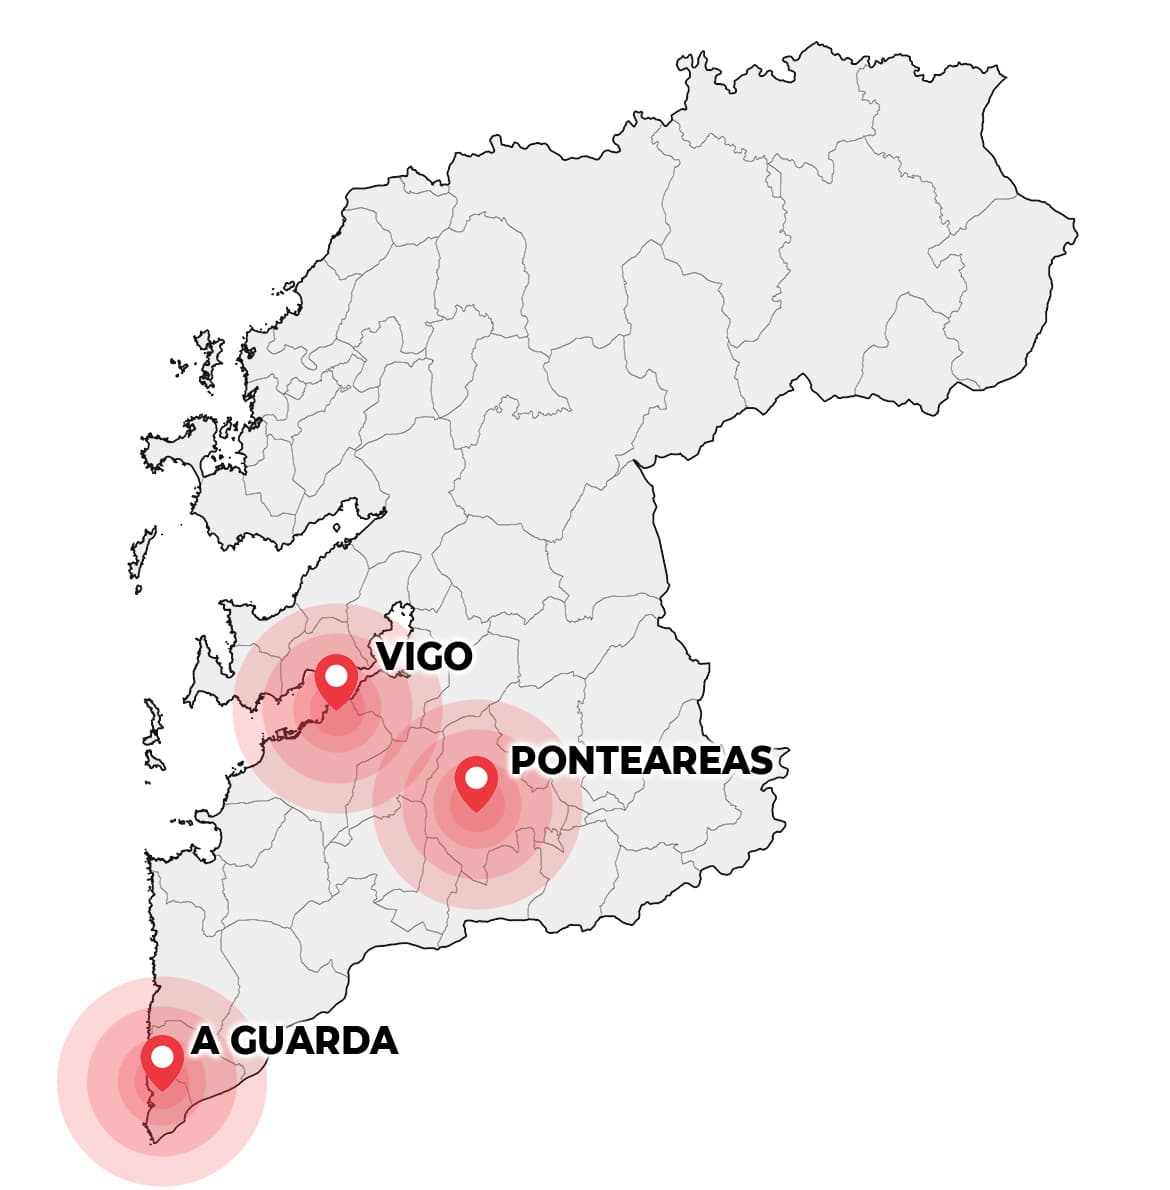 Distribuimos gasoil en Ponteareas, Vigo, A Guarda y alrededores